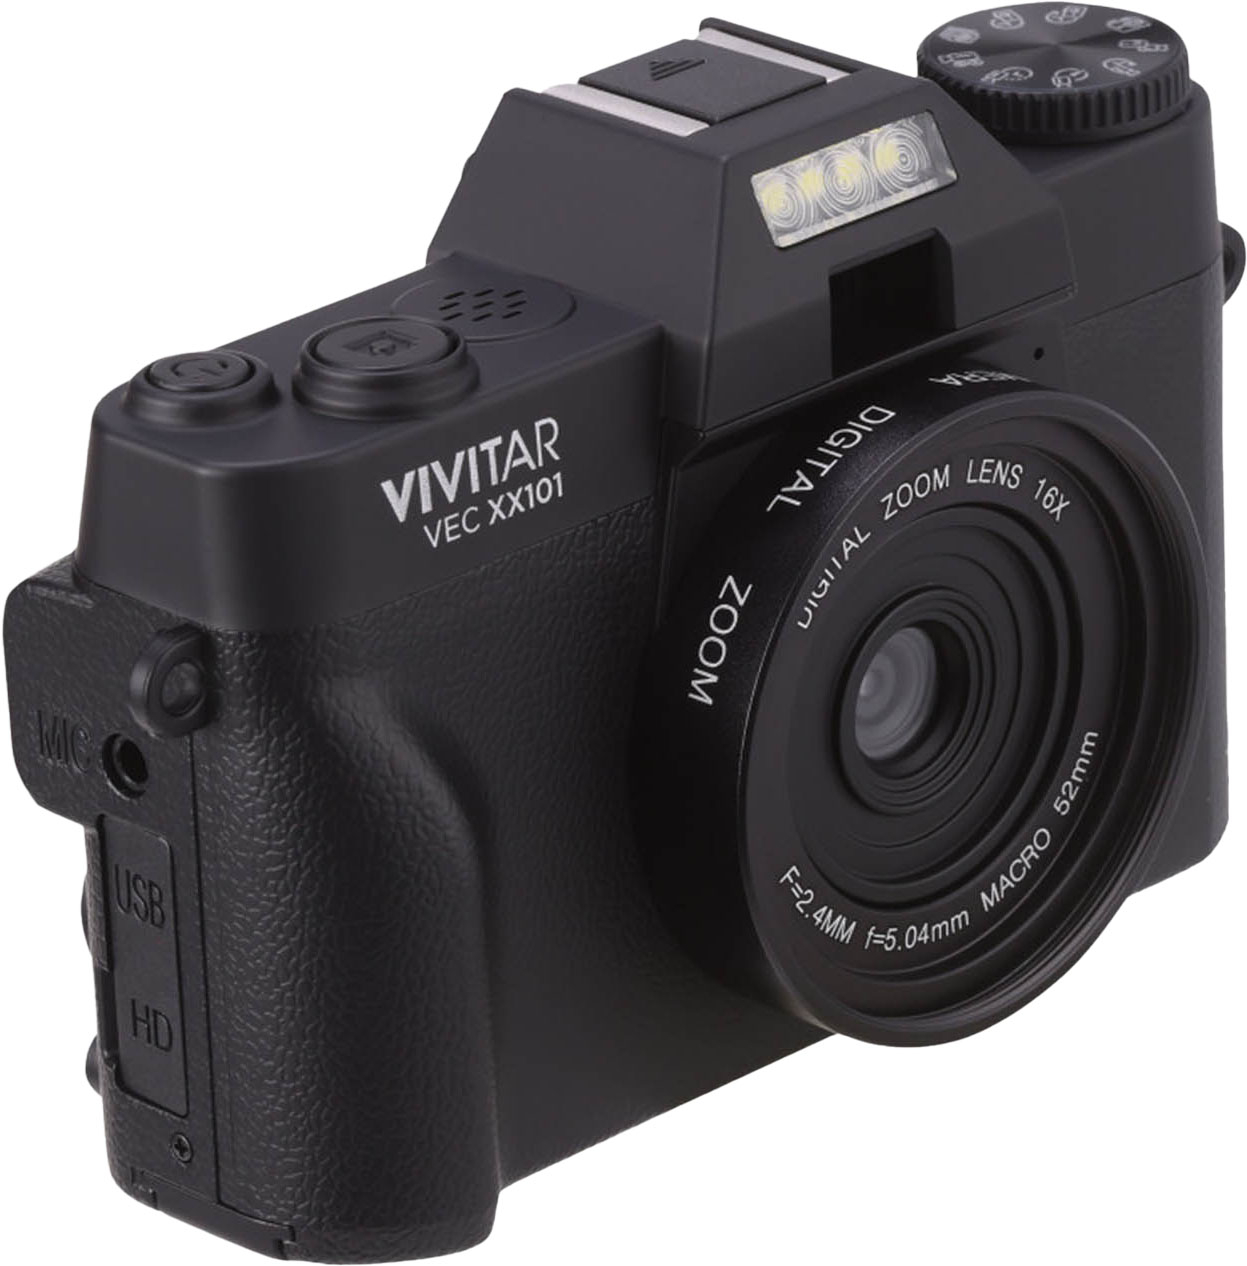 Left View: Vivitar - VECXX101 4K Digital Camera - Black